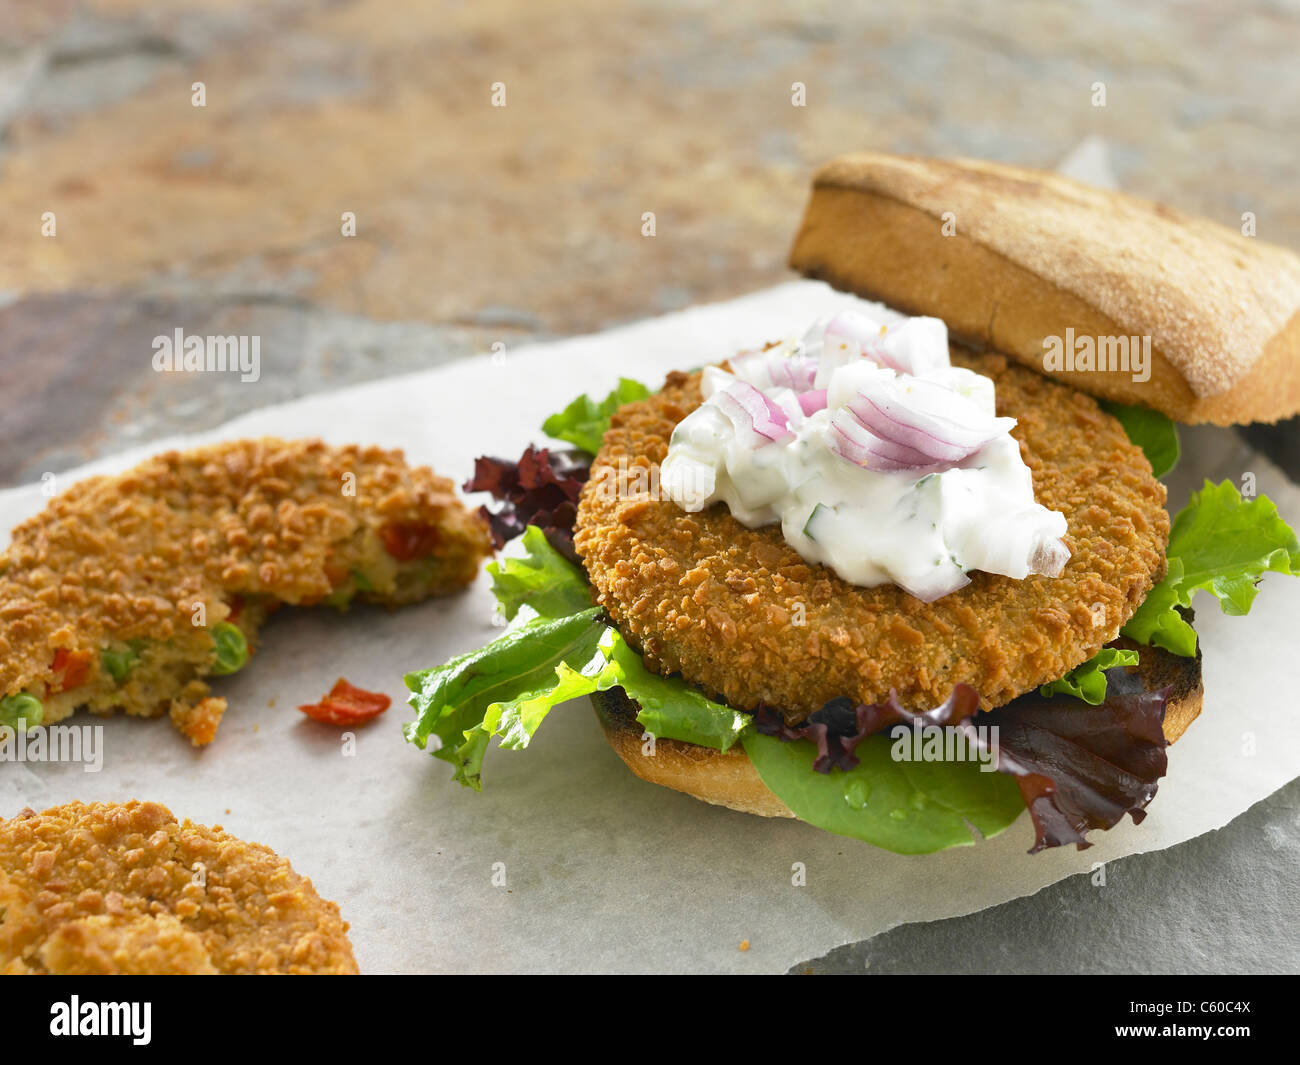 Hamburger Vegetariano in un panino Foto Stock